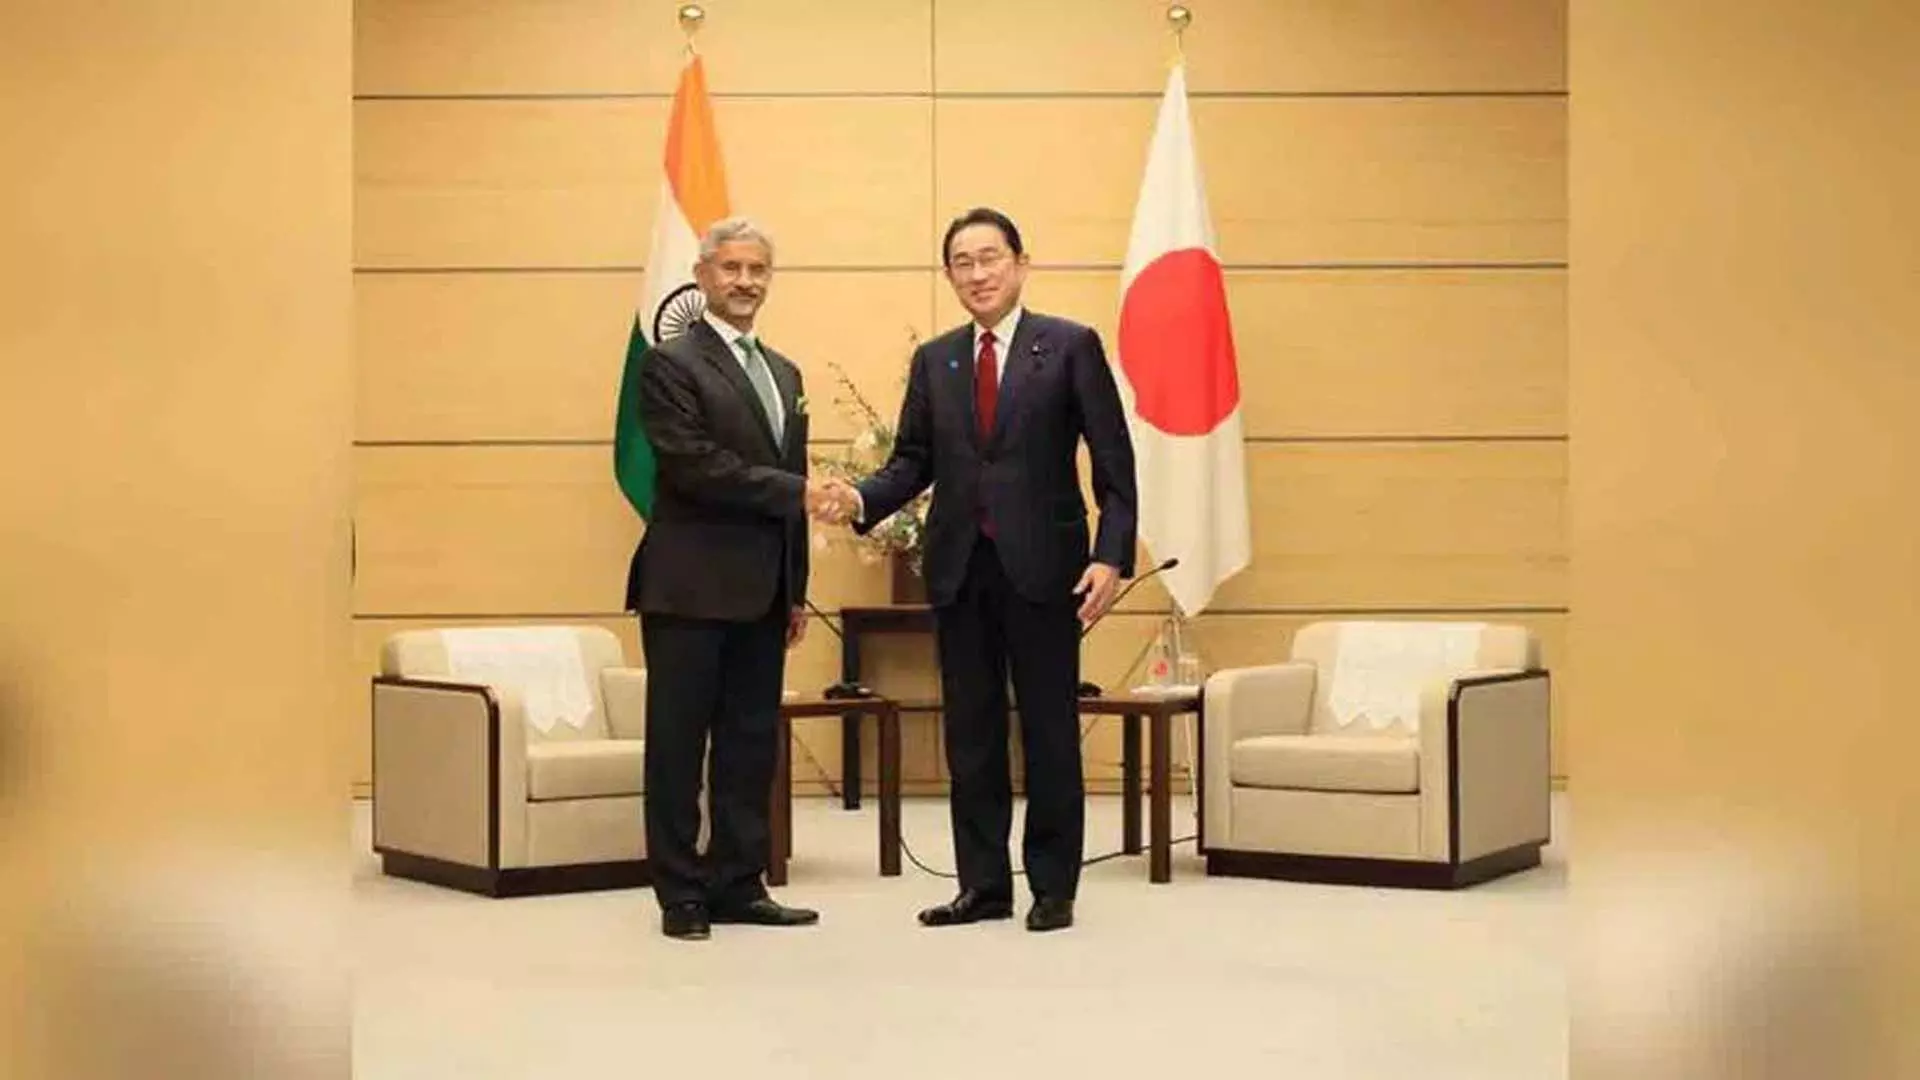 विदेश मंत्री की जापान यात्रा द्विपक्षीय संबंधों का जायजा लेने का सामयिक अवसर